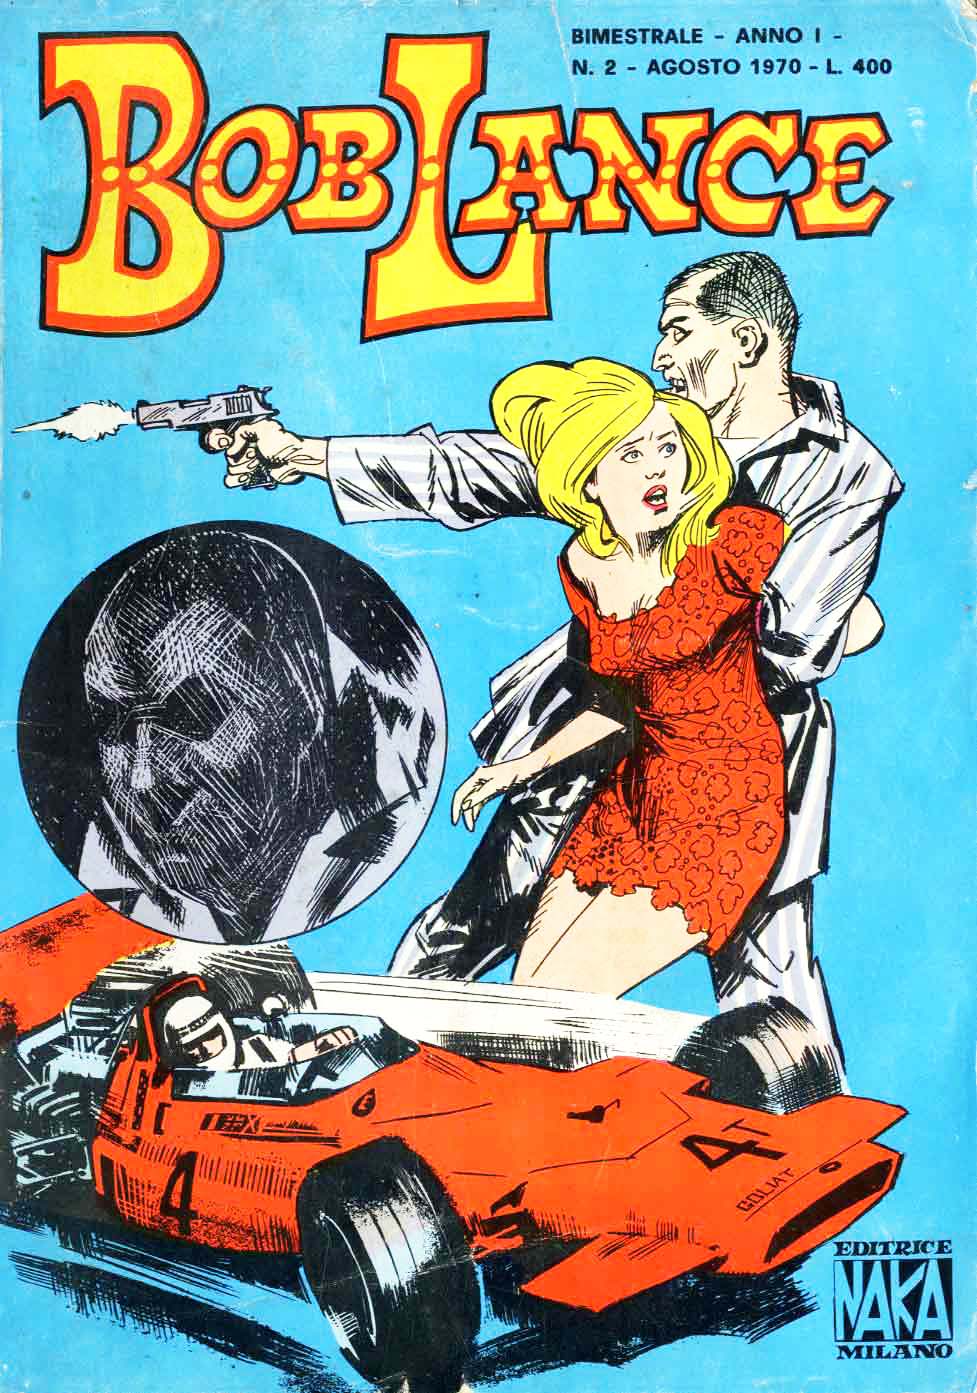 Fumetti Vintage: le molte vite di Bob Lance